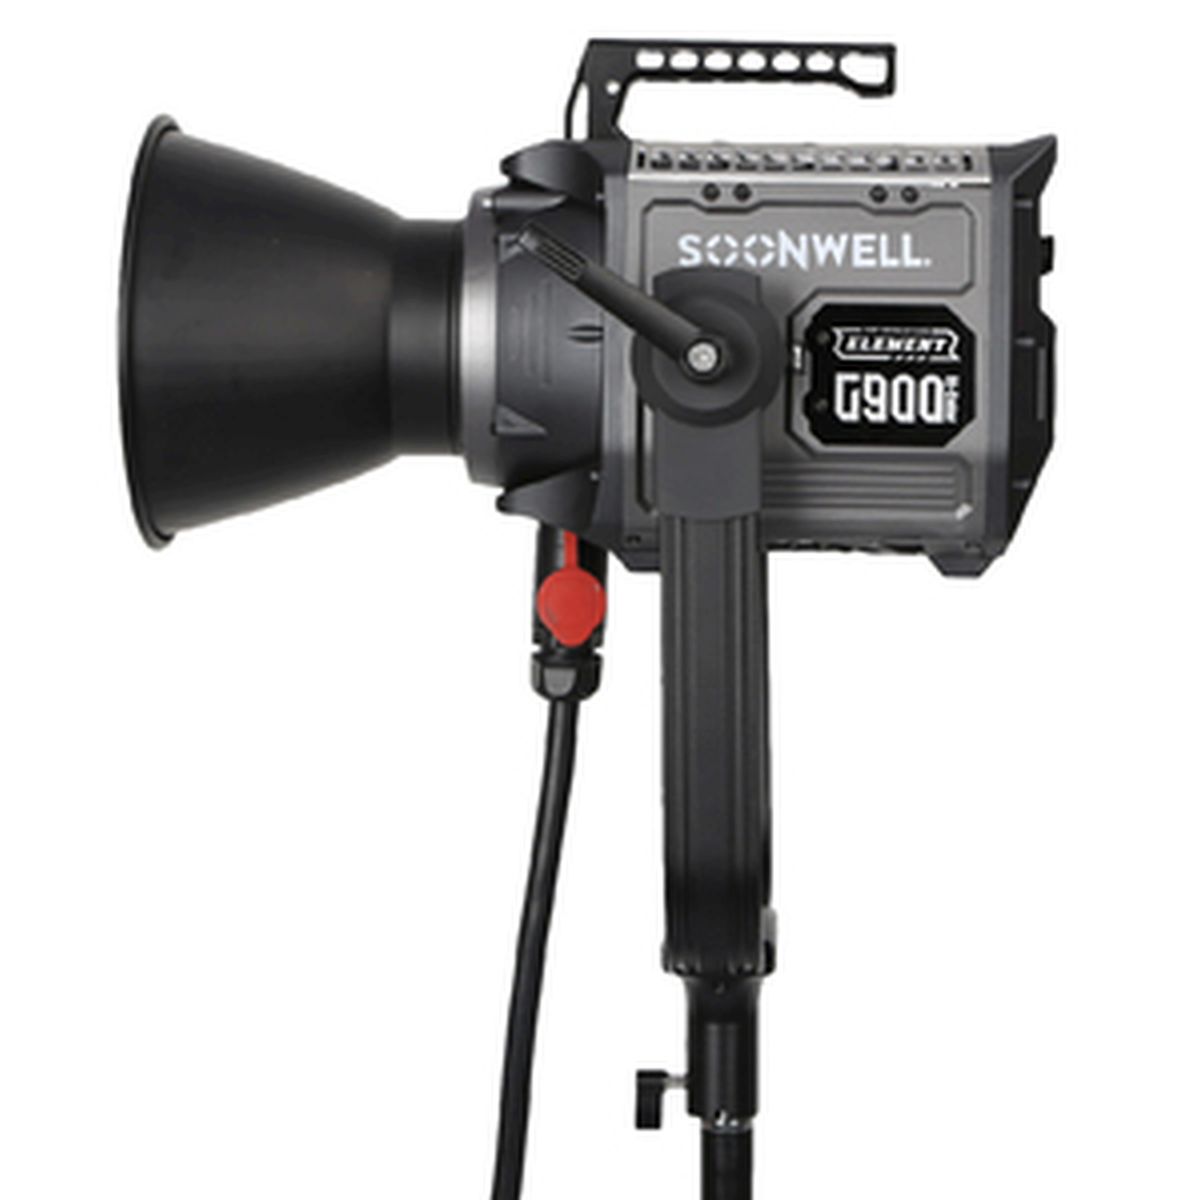 Soonwell G900 Bi-Color LED-Scheinwerfer